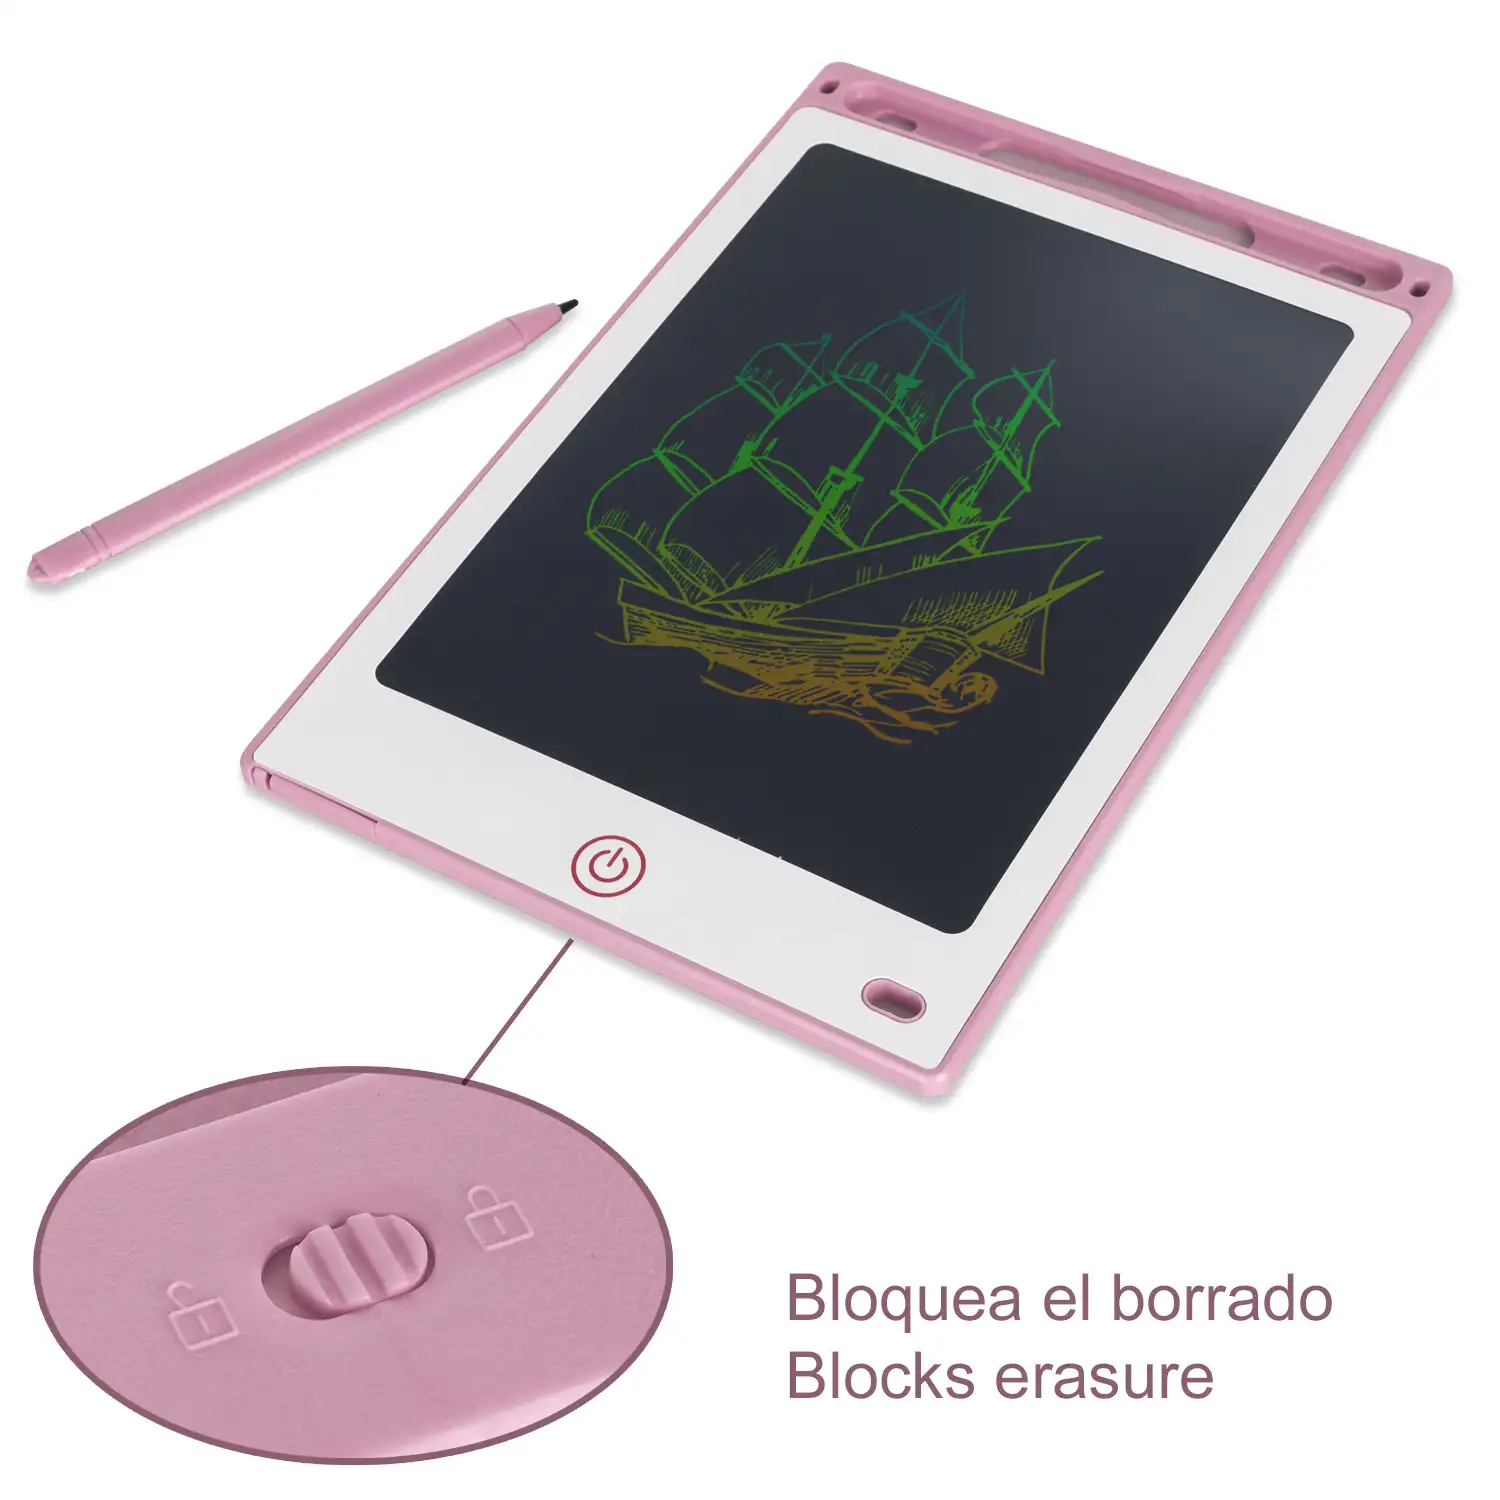 Tableta LCD portátil de dibujo y escritura de 8,5 pulgadas. Pantalla multicolor. Bloqueo de borrado.